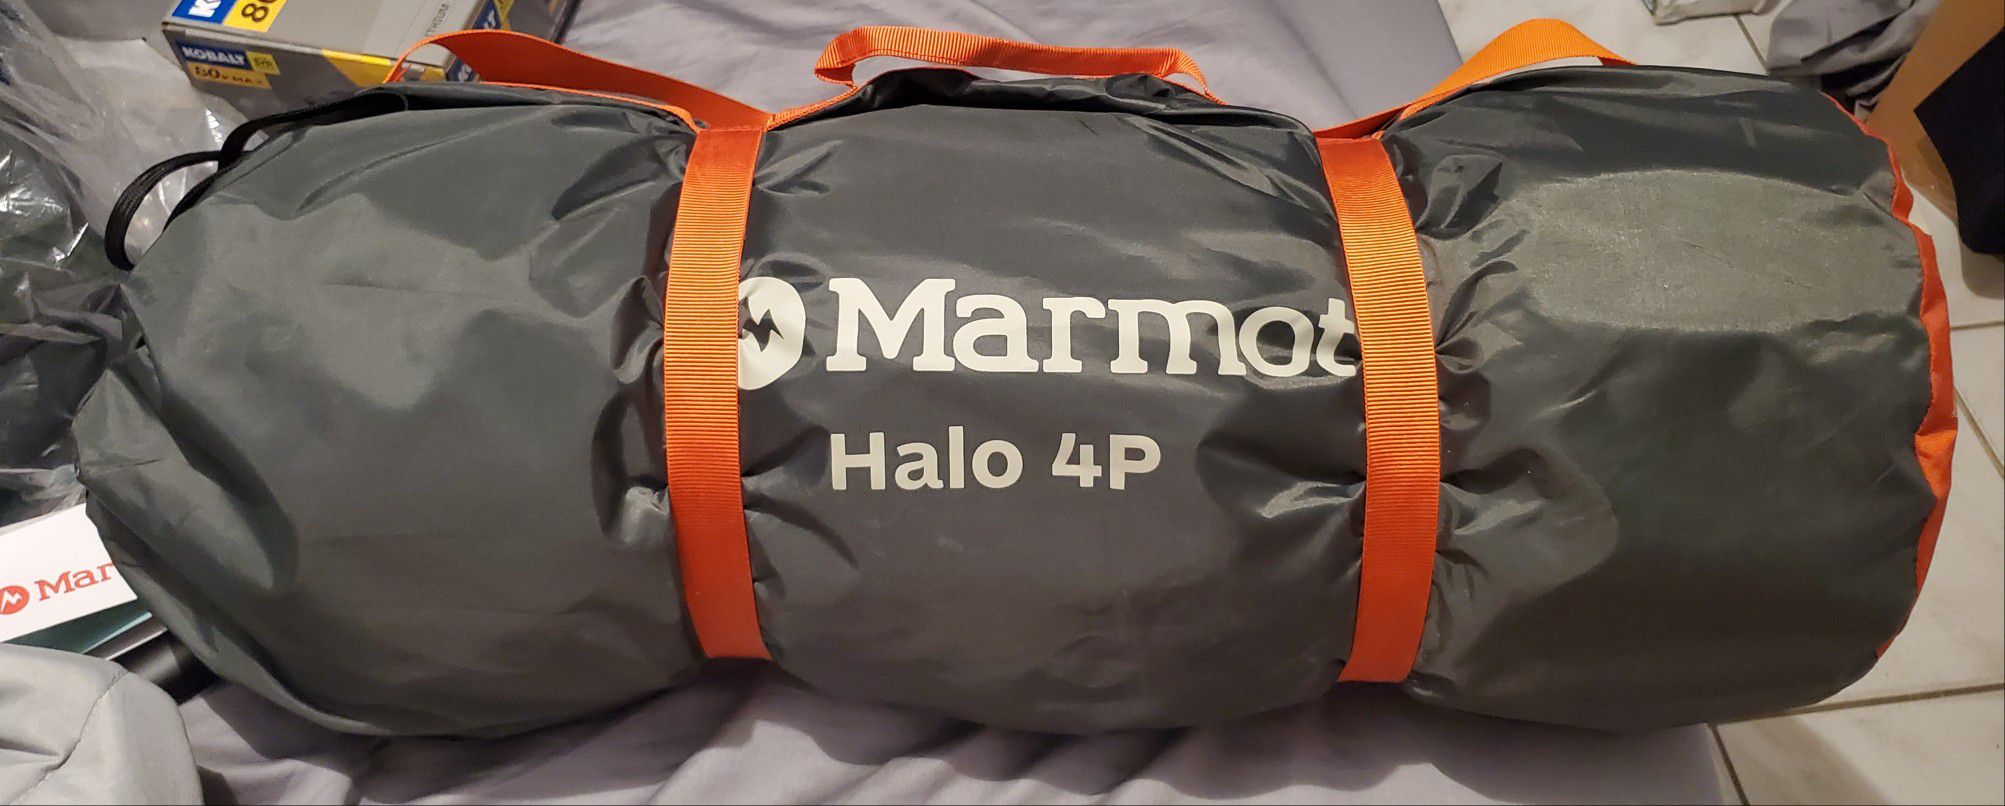 Marmot Halo - Tienda de campaña para 4 personas